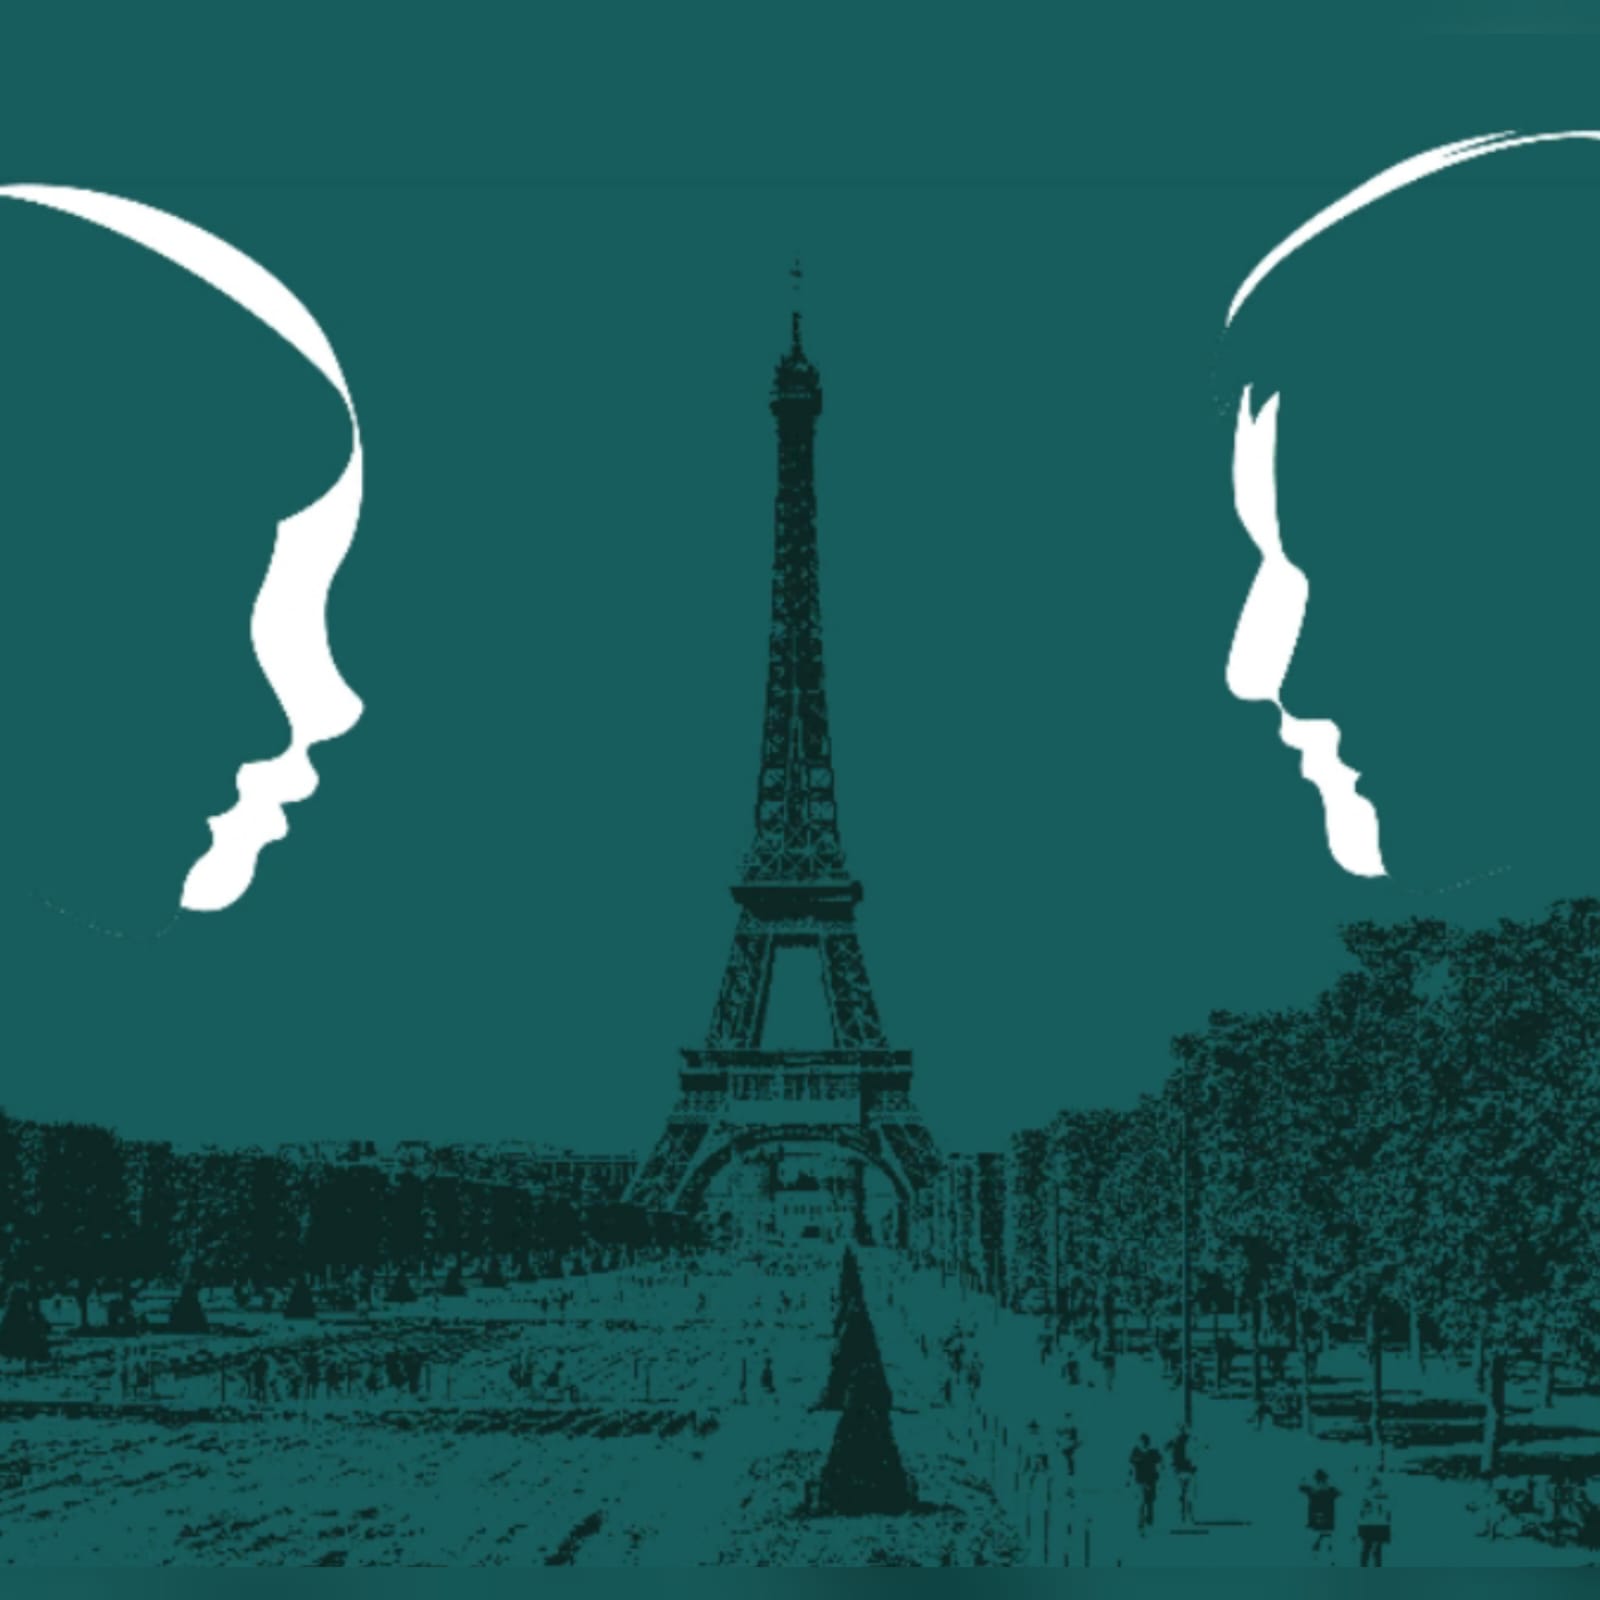 "C'è un uomo a Parigi": in arrivo il nuovo romanzo di Maria Novella Bettini